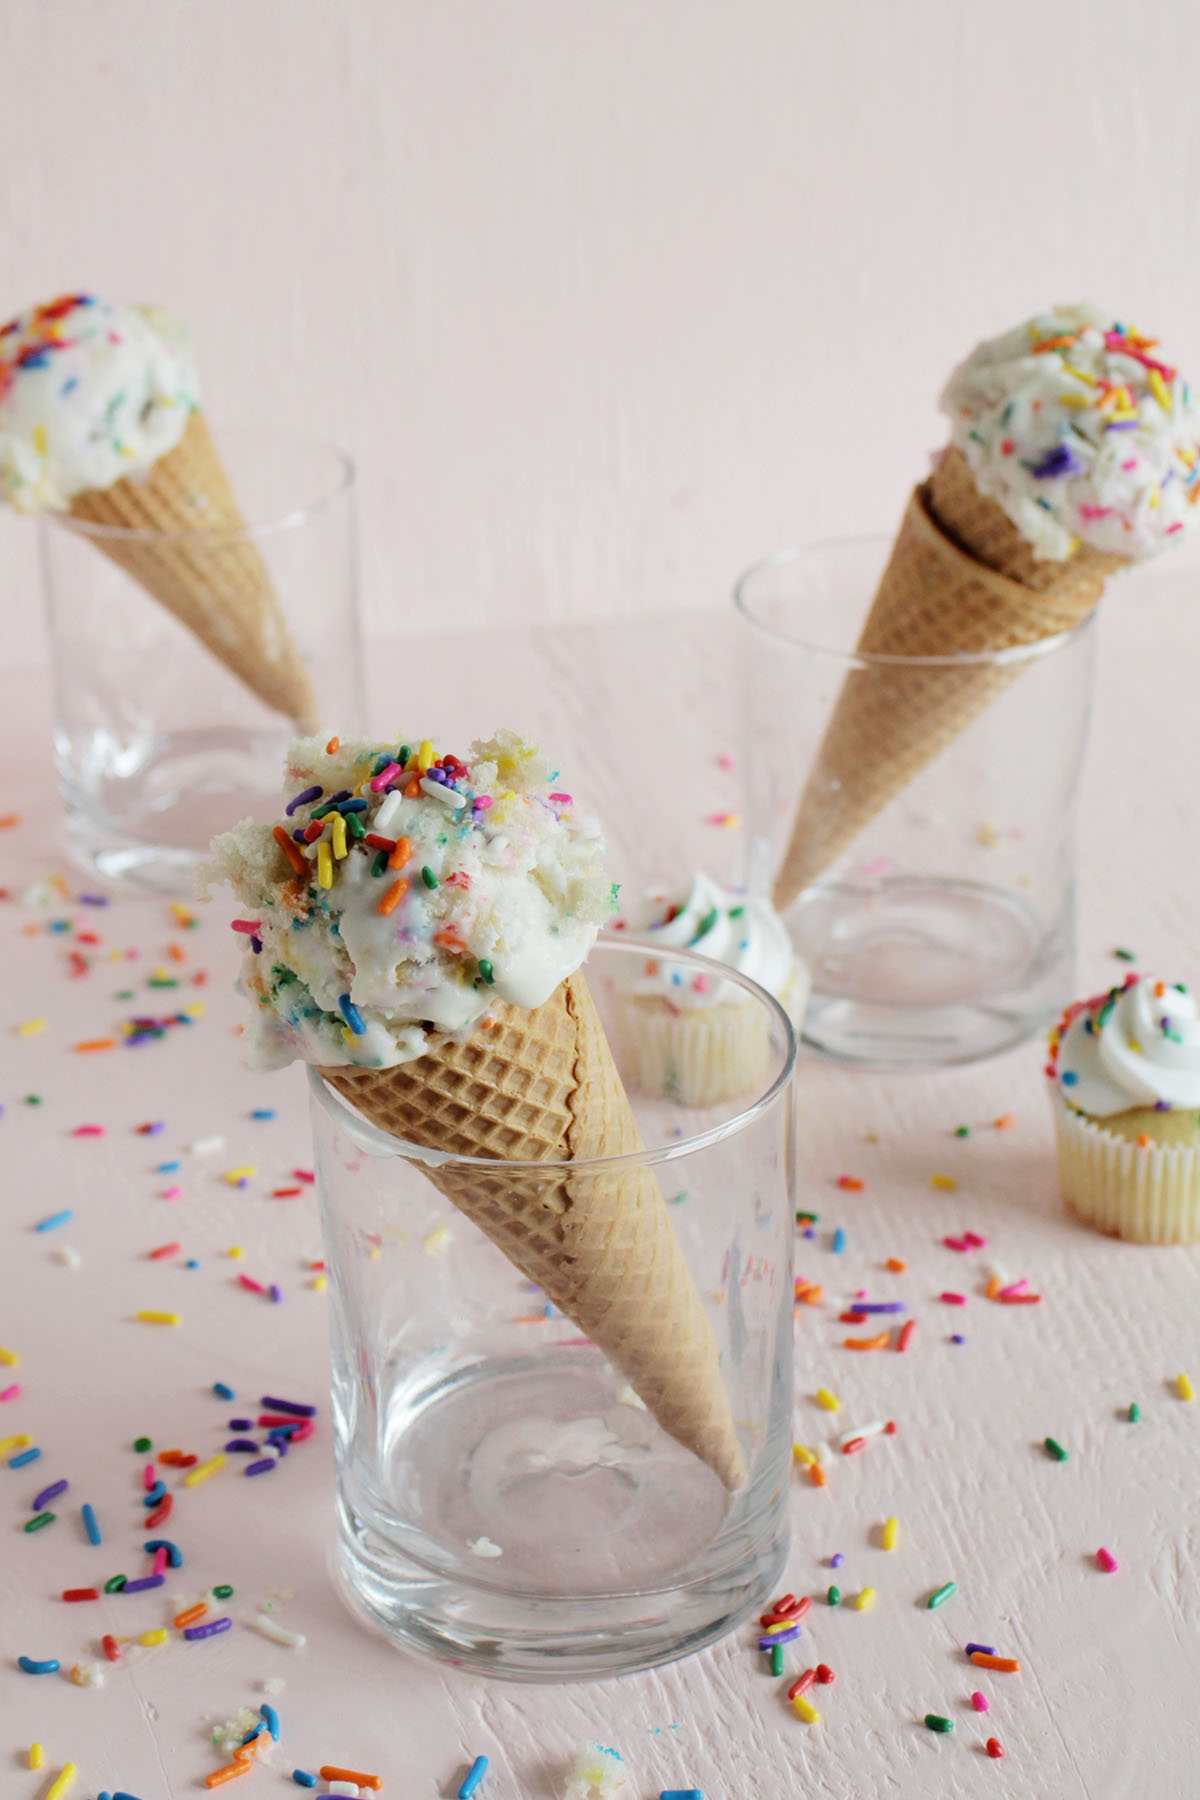 three ice cream cones with rainbow sprinkles